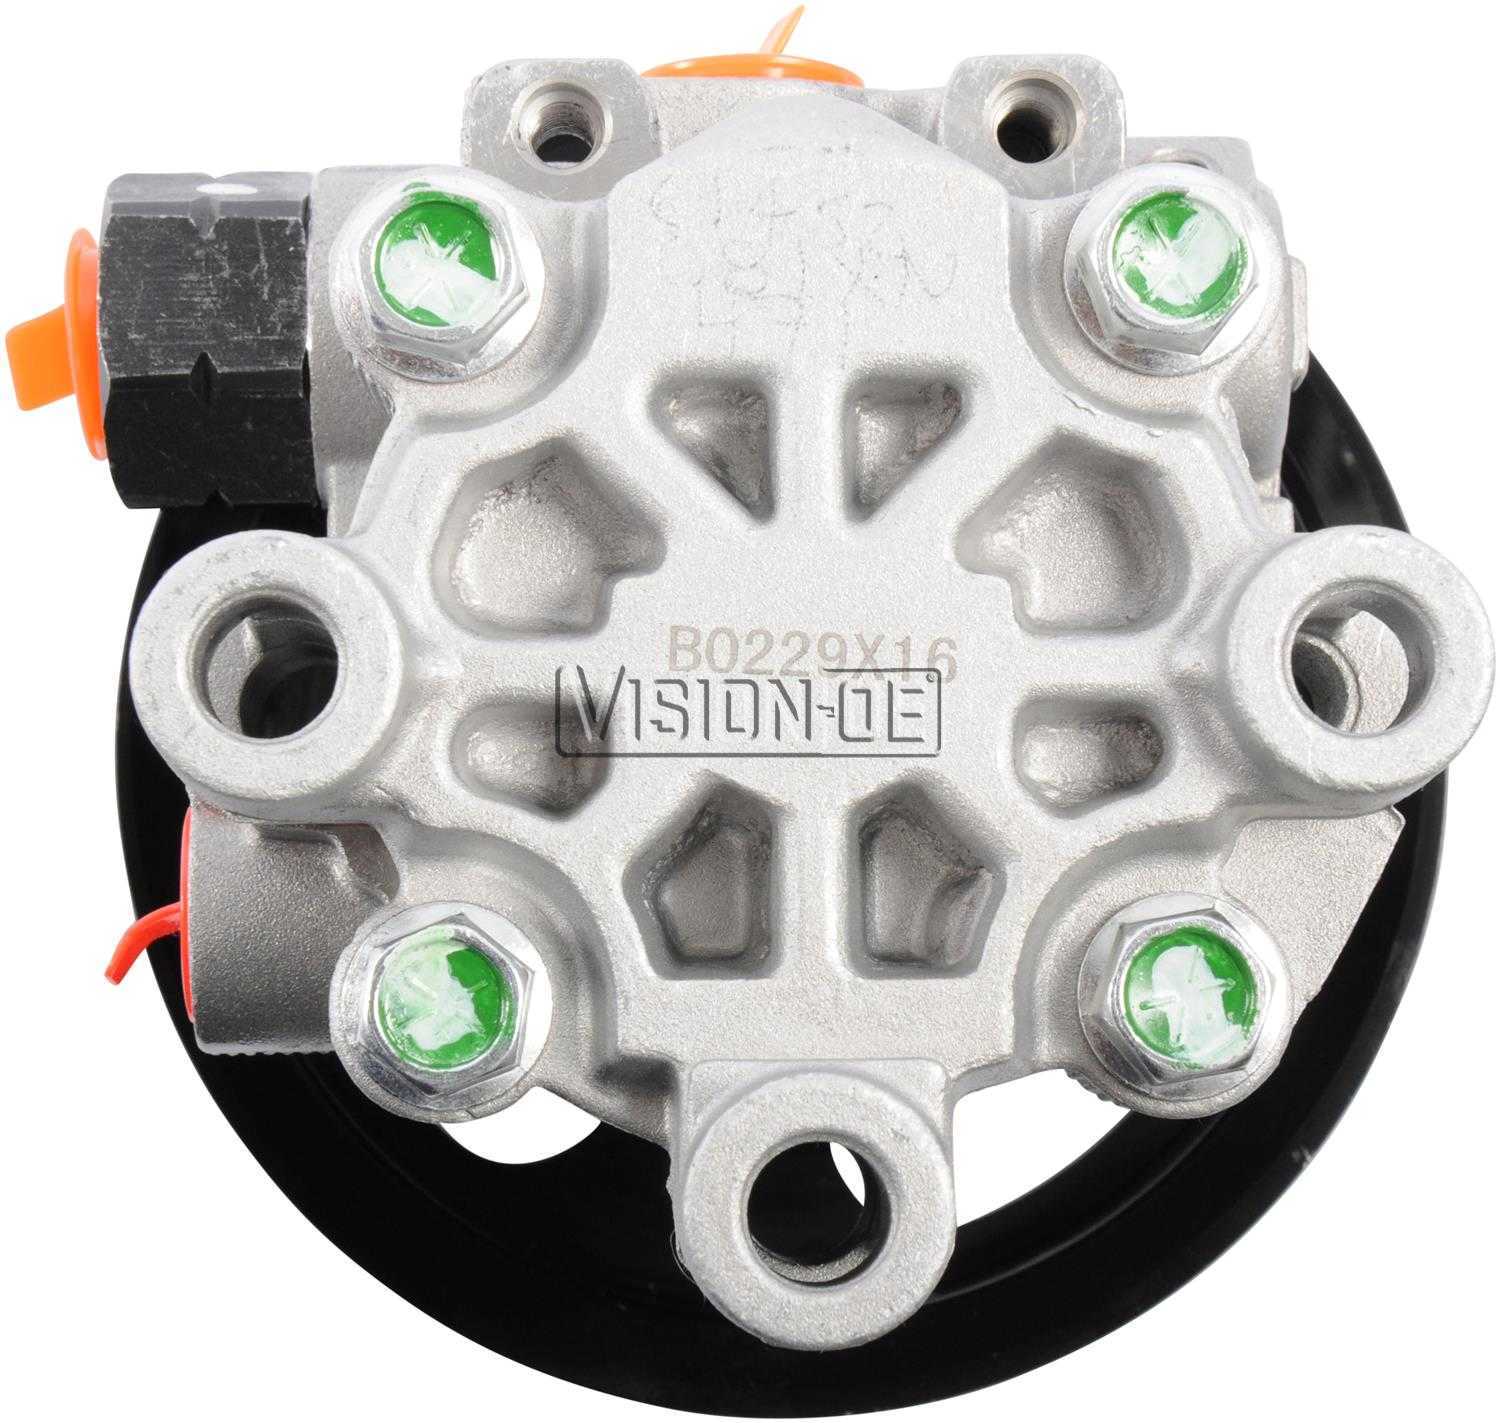 VISION-OE - New Power Steering Pump - VOE N990-0950